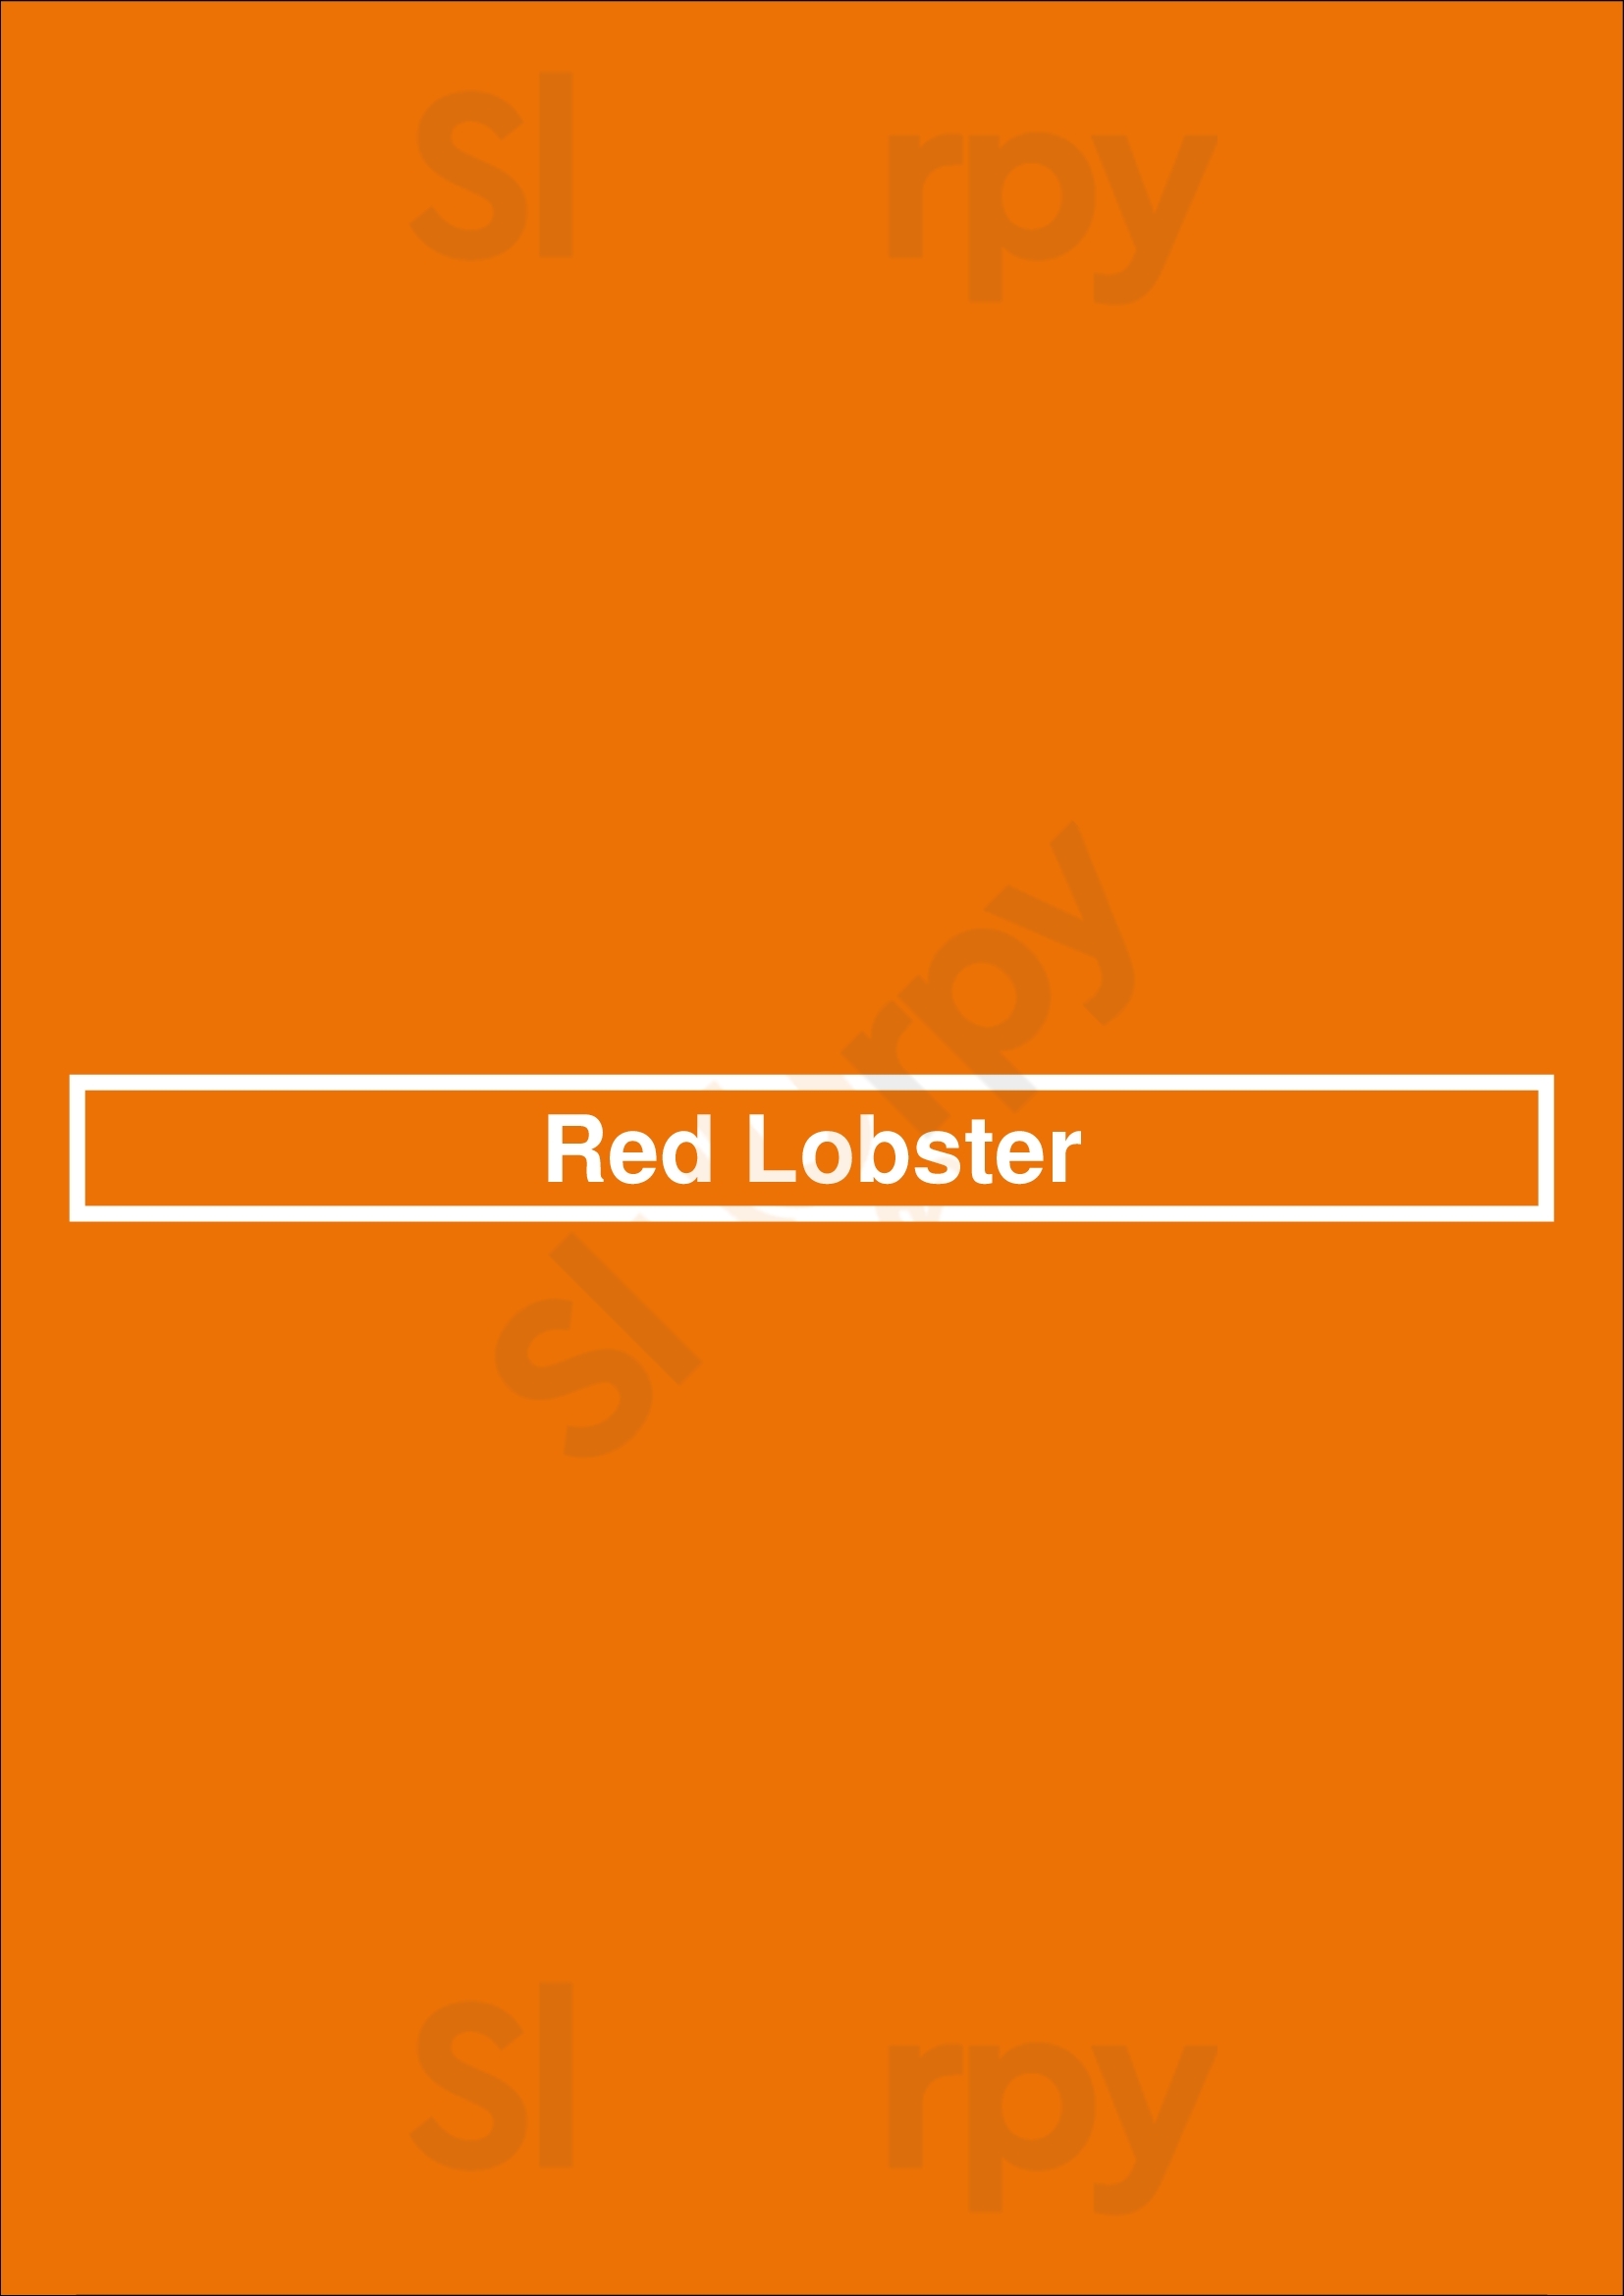 Red Lobster Kingston Menu - 1